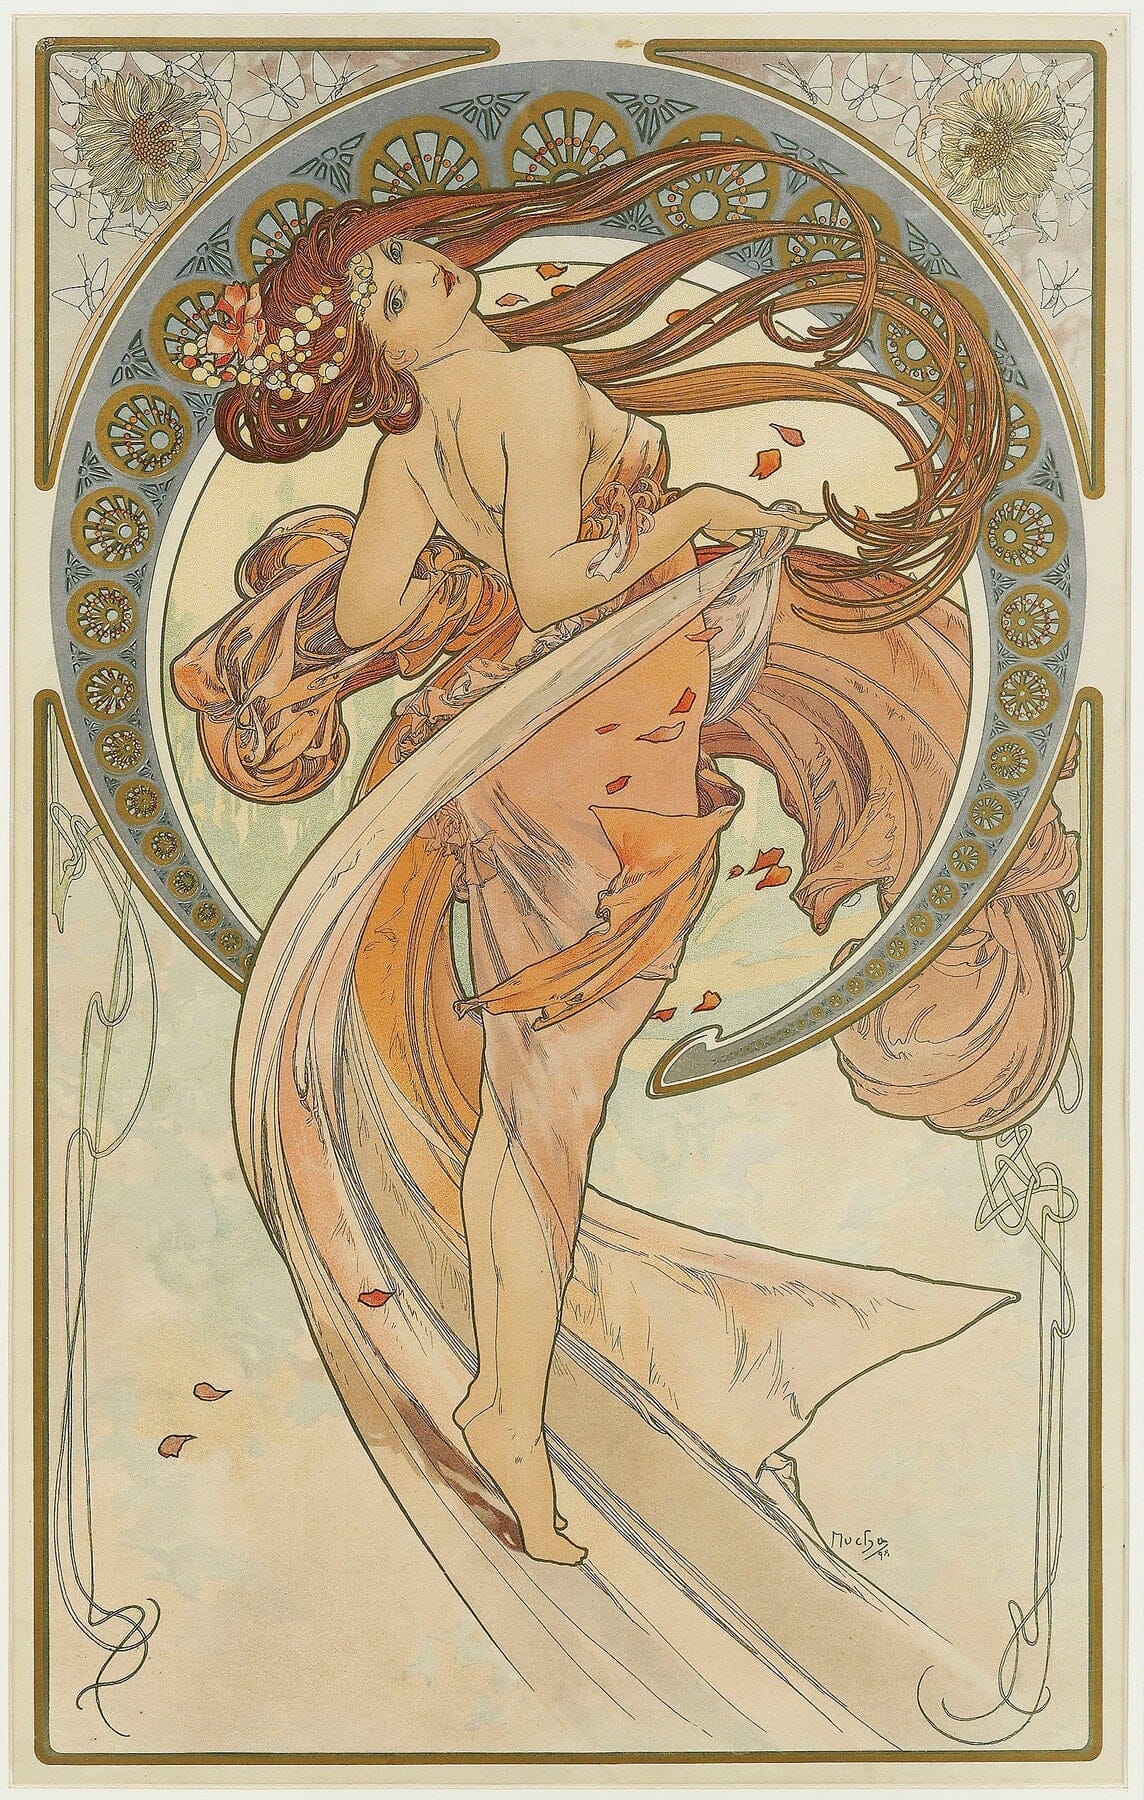 The Arts 2 (1898) Alphonse Mucha art nouveau print  The Trumpet Shop Vintage Prints   